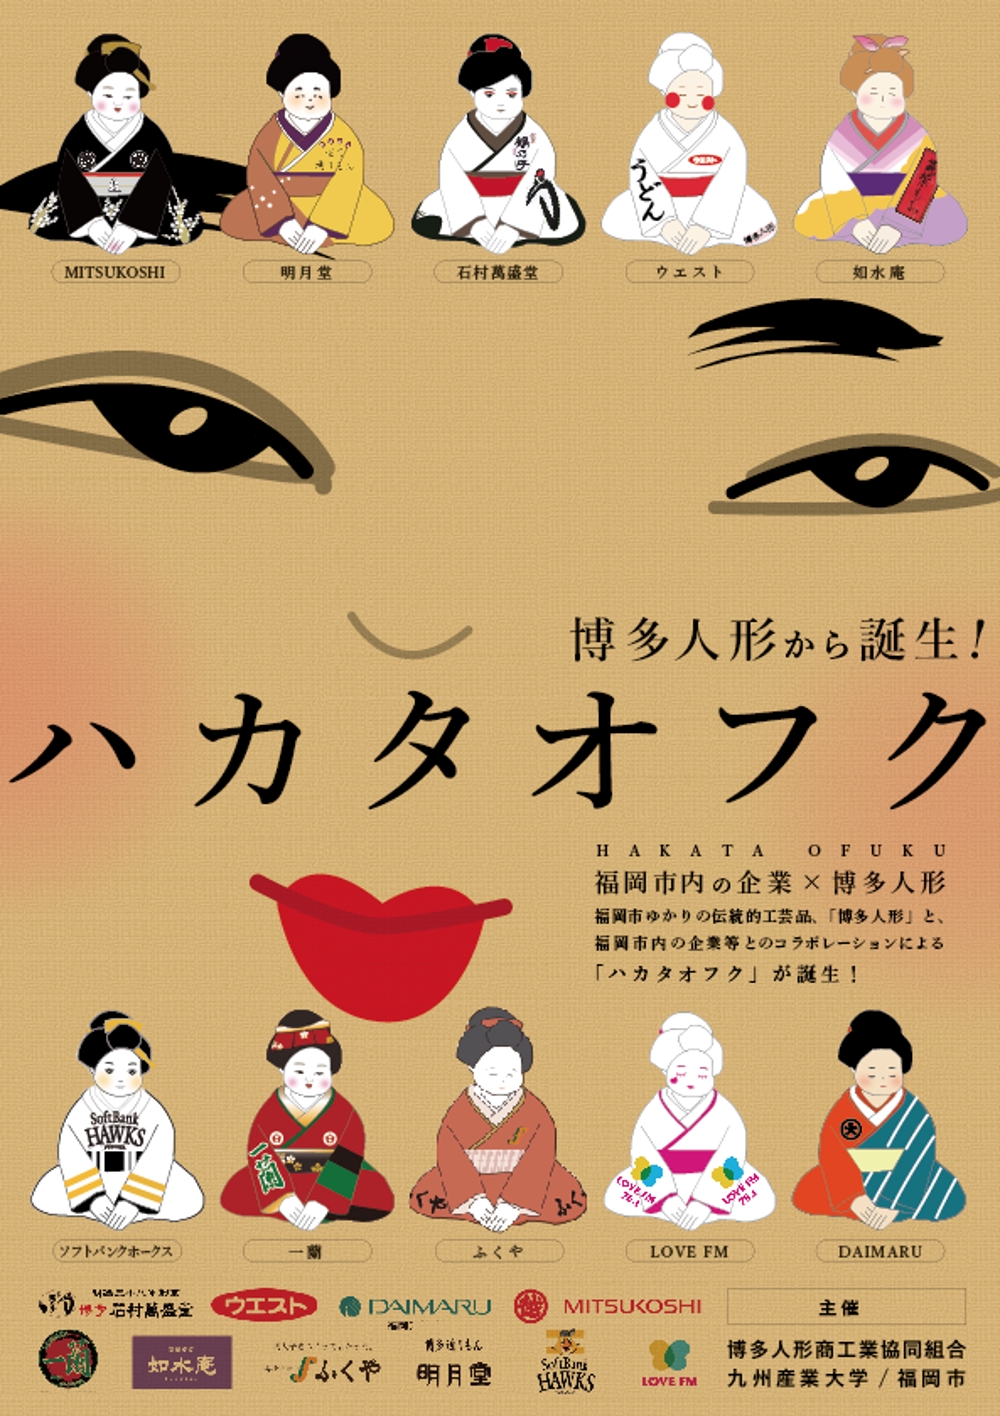 企業オリジナル博多人形「ハカタオフク」のポスターデザイン